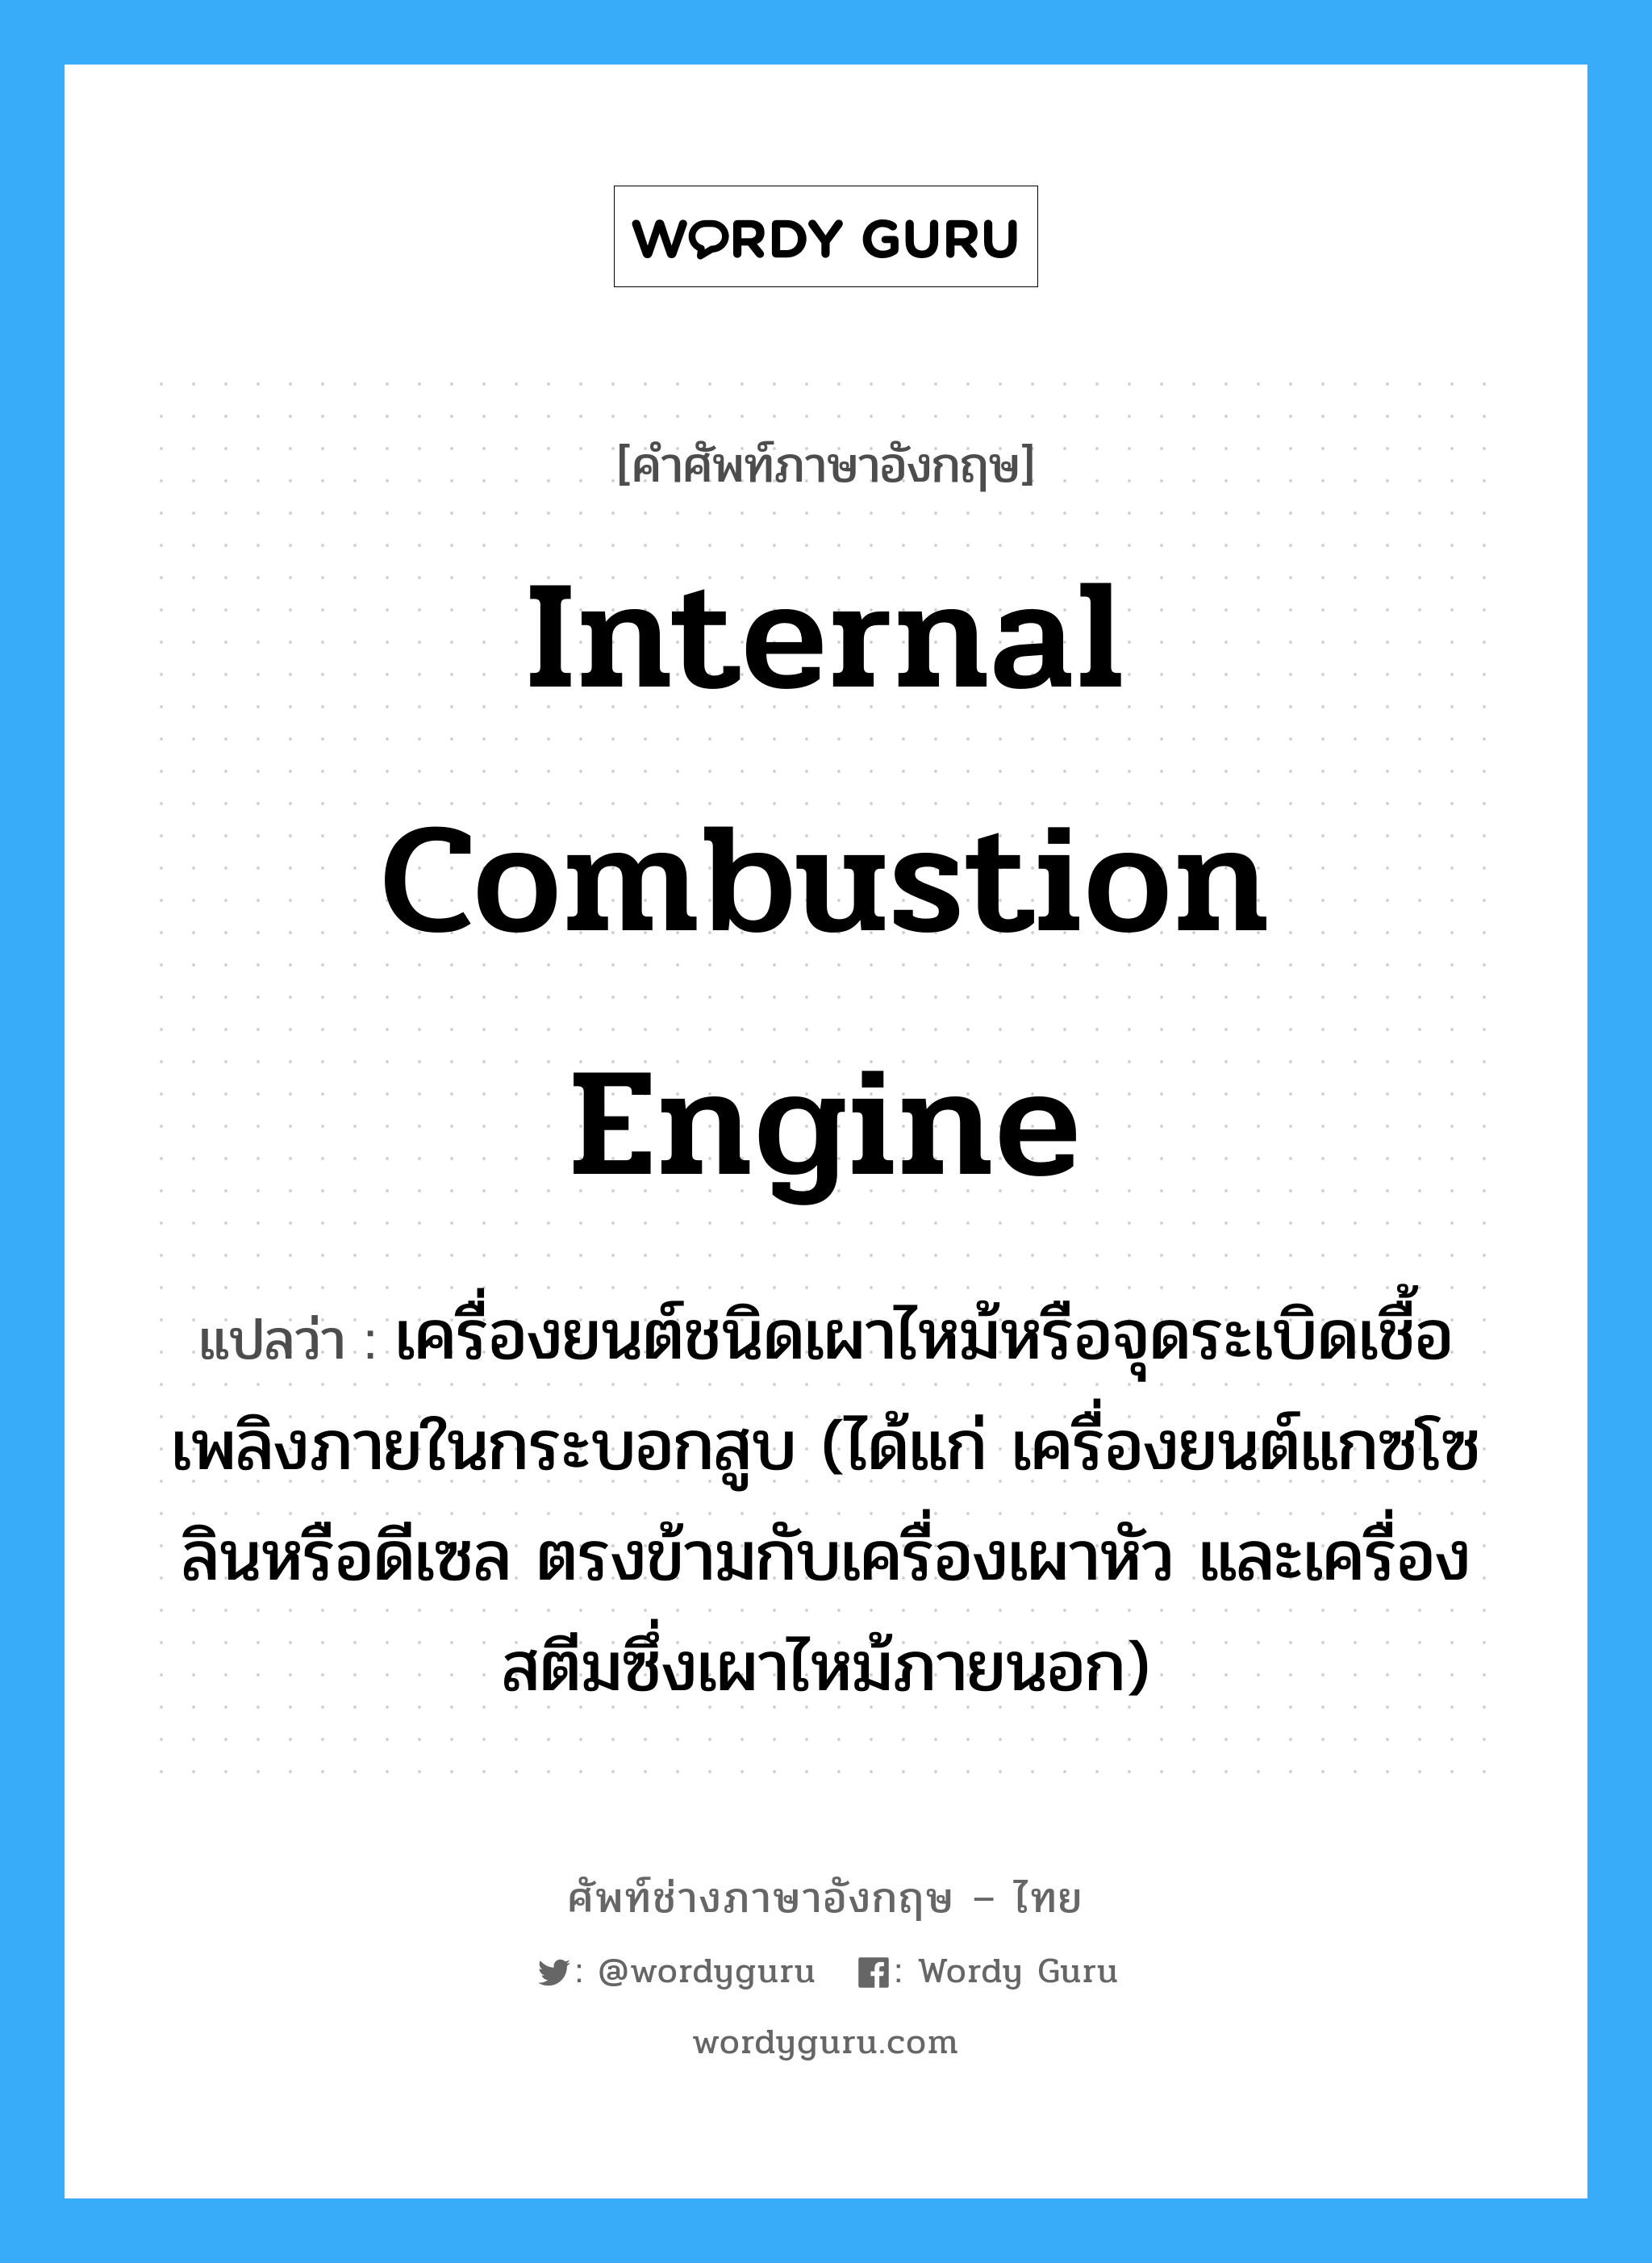 internal combustion engine แปลว่า?, คำศัพท์ช่างภาษาอังกฤษ - ไทย internal combustion engine คำศัพท์ภาษาอังกฤษ internal combustion engine แปลว่า เครื่องยนต์ชนิดเผาไหม้หรือจุดระเบิดเชื้อเพลิงภายในกระบอกสูบ (ได้แก่ เครื่องยนต์แกซโซลินหรือดีเซล ตรงข้ามกับเครื่องเผาหัว และเครื่องสตีมซึ่งเผาไหม้ภายนอก)